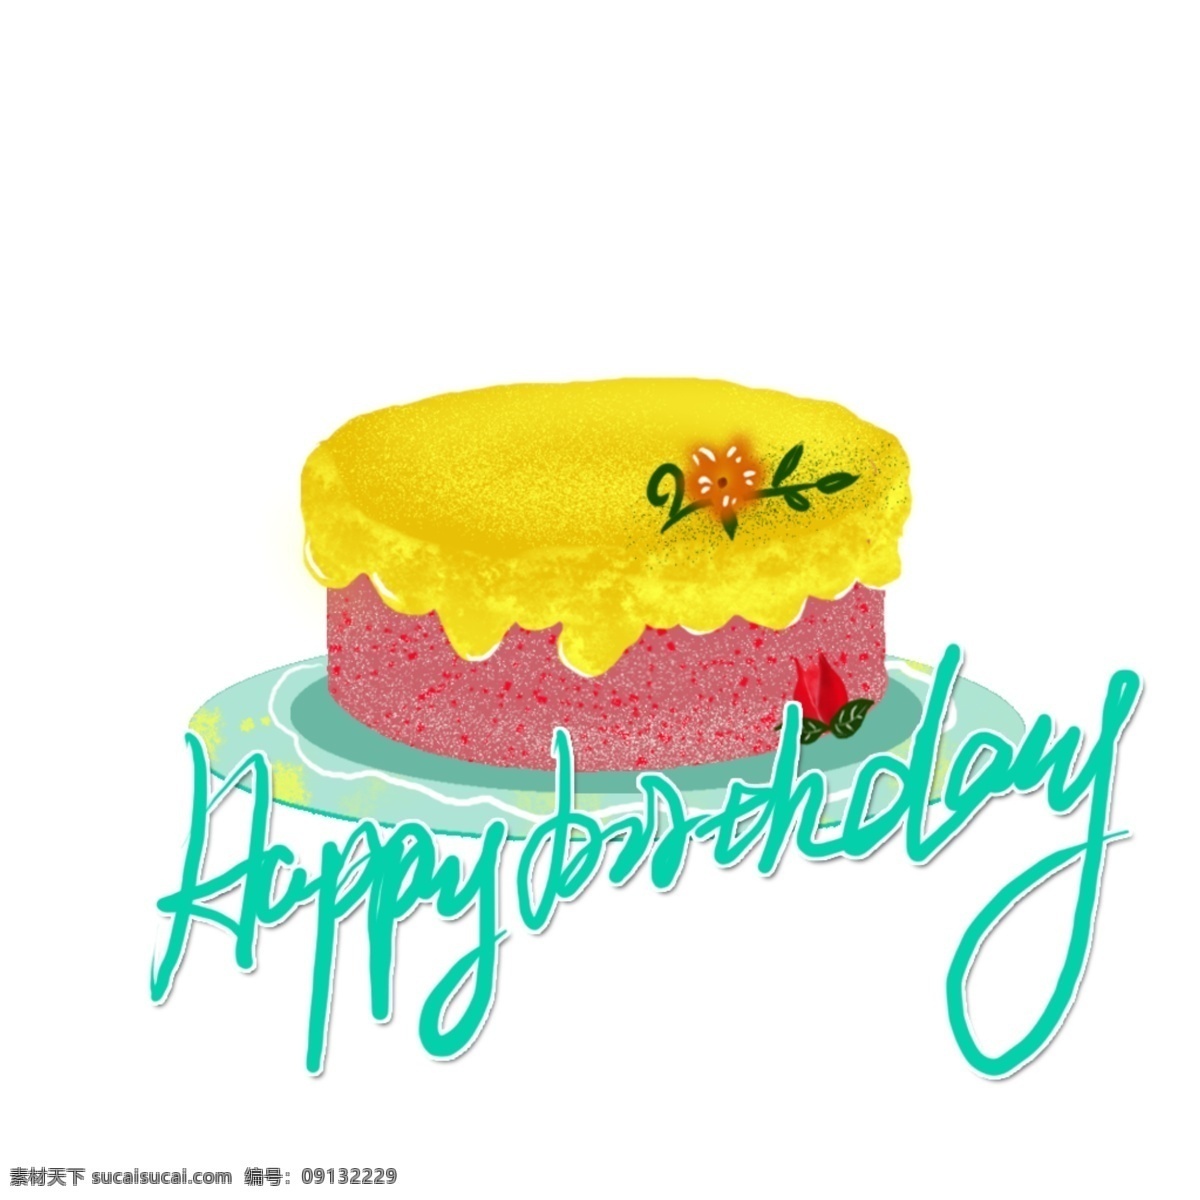 生日贺卡 图案 系列 蛋糕图案 黄色奶油蛋糕 粉色奶油蛋糕 装饰花的蛋糕 单层生日蛋糕